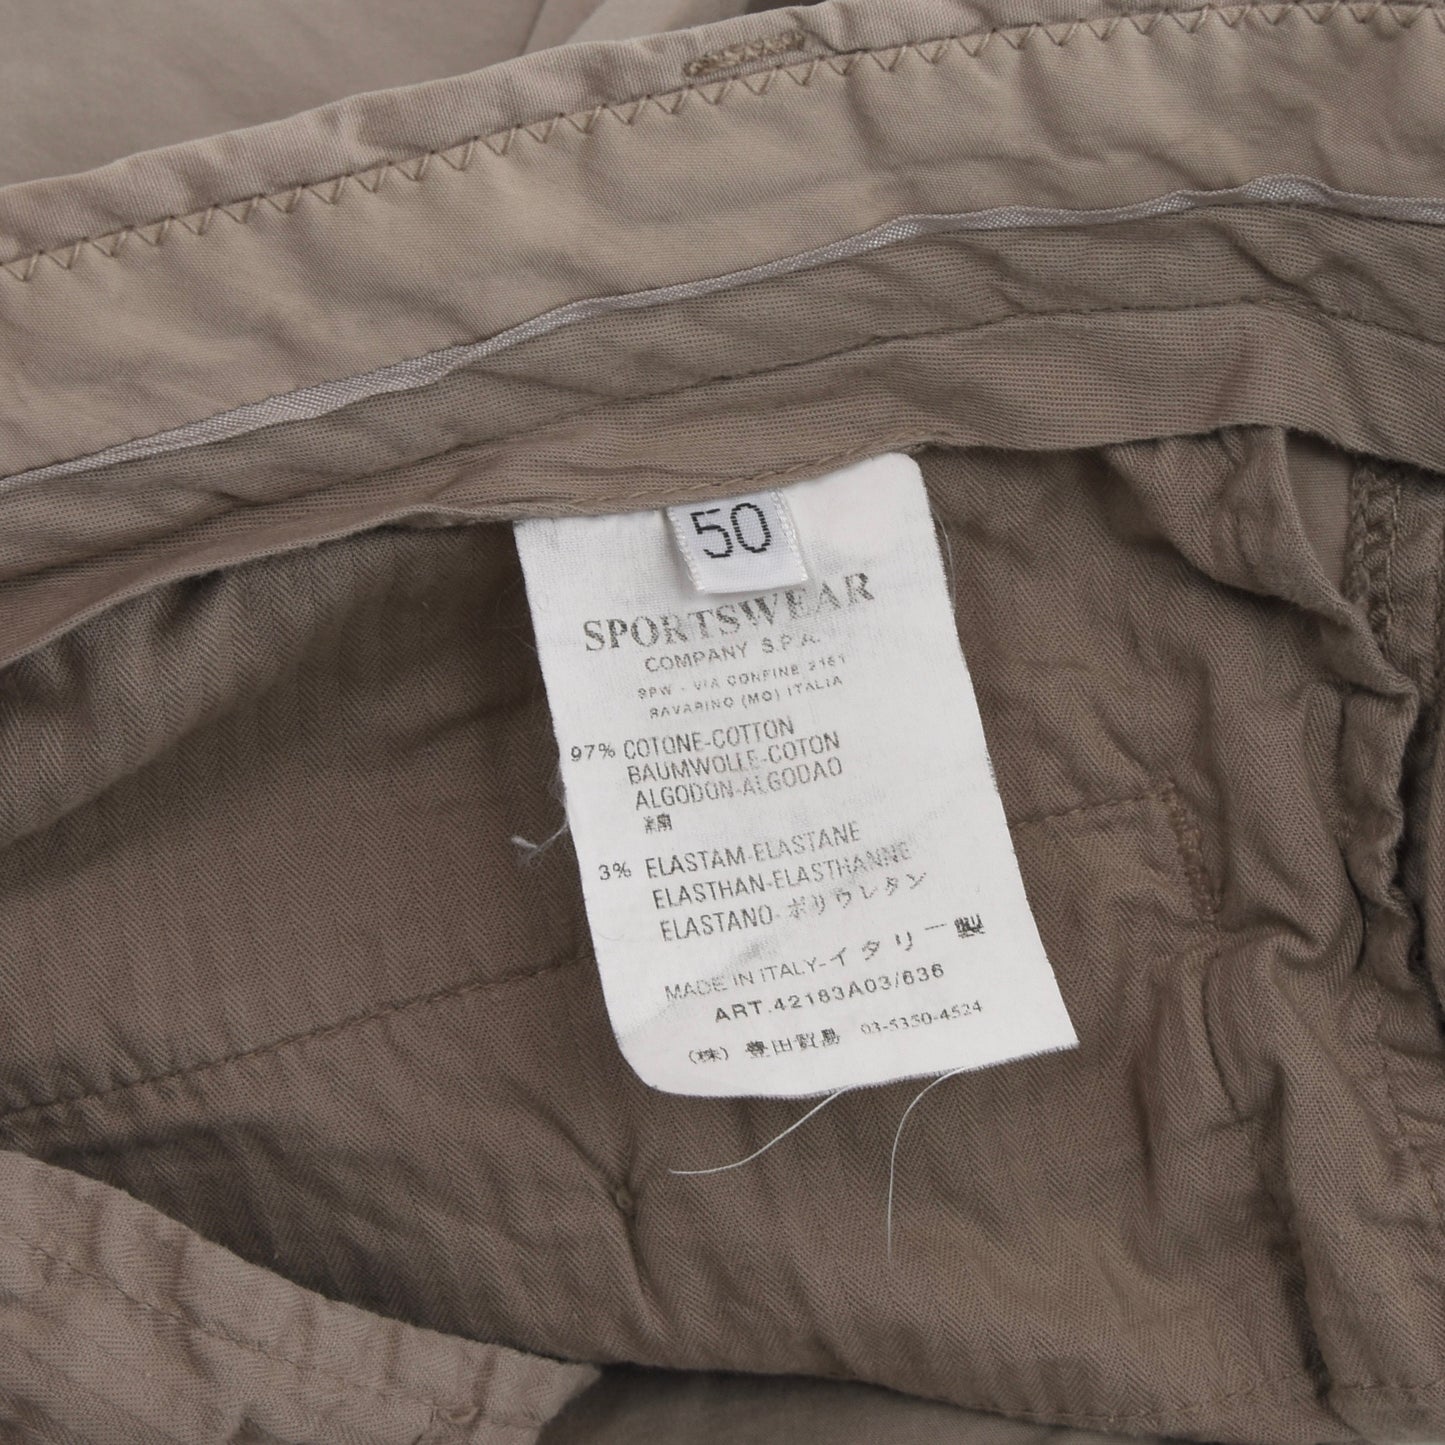 CP Company 2005 Pants Size 50 - Tan/Khaki